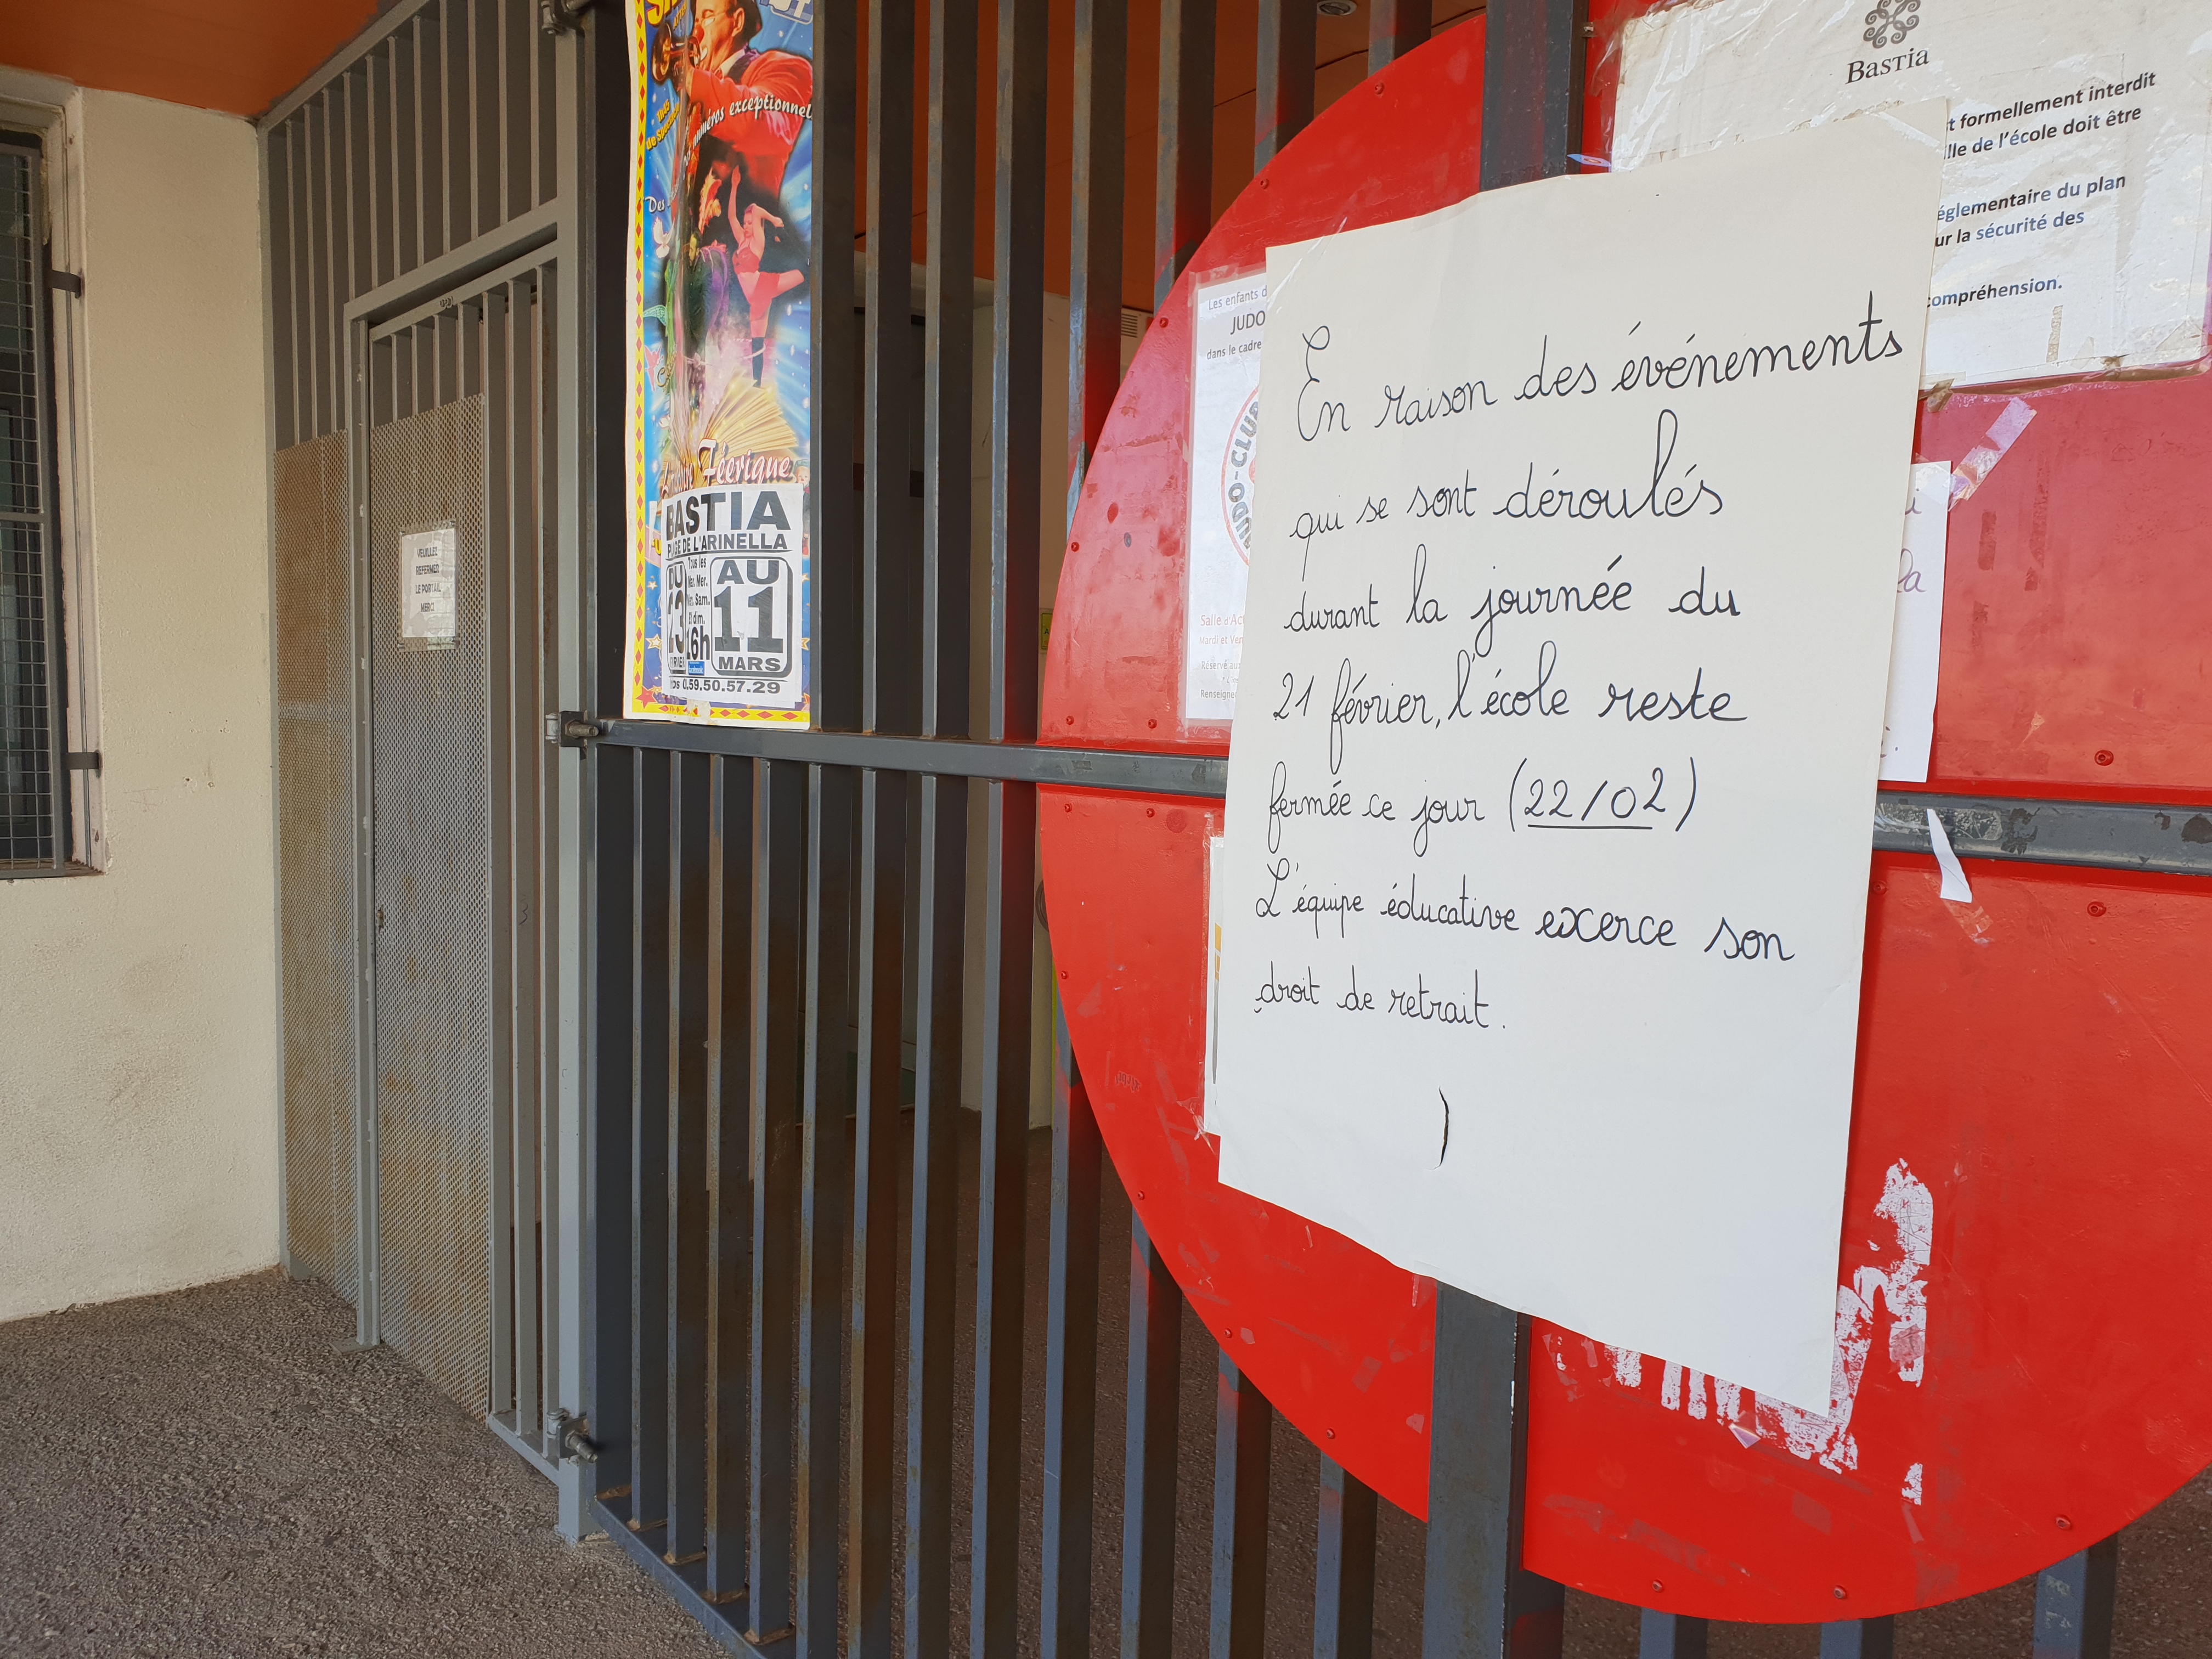 Agression de l'école Charles-Andrei : Un homme en garde à vue au commissariat de Bastia